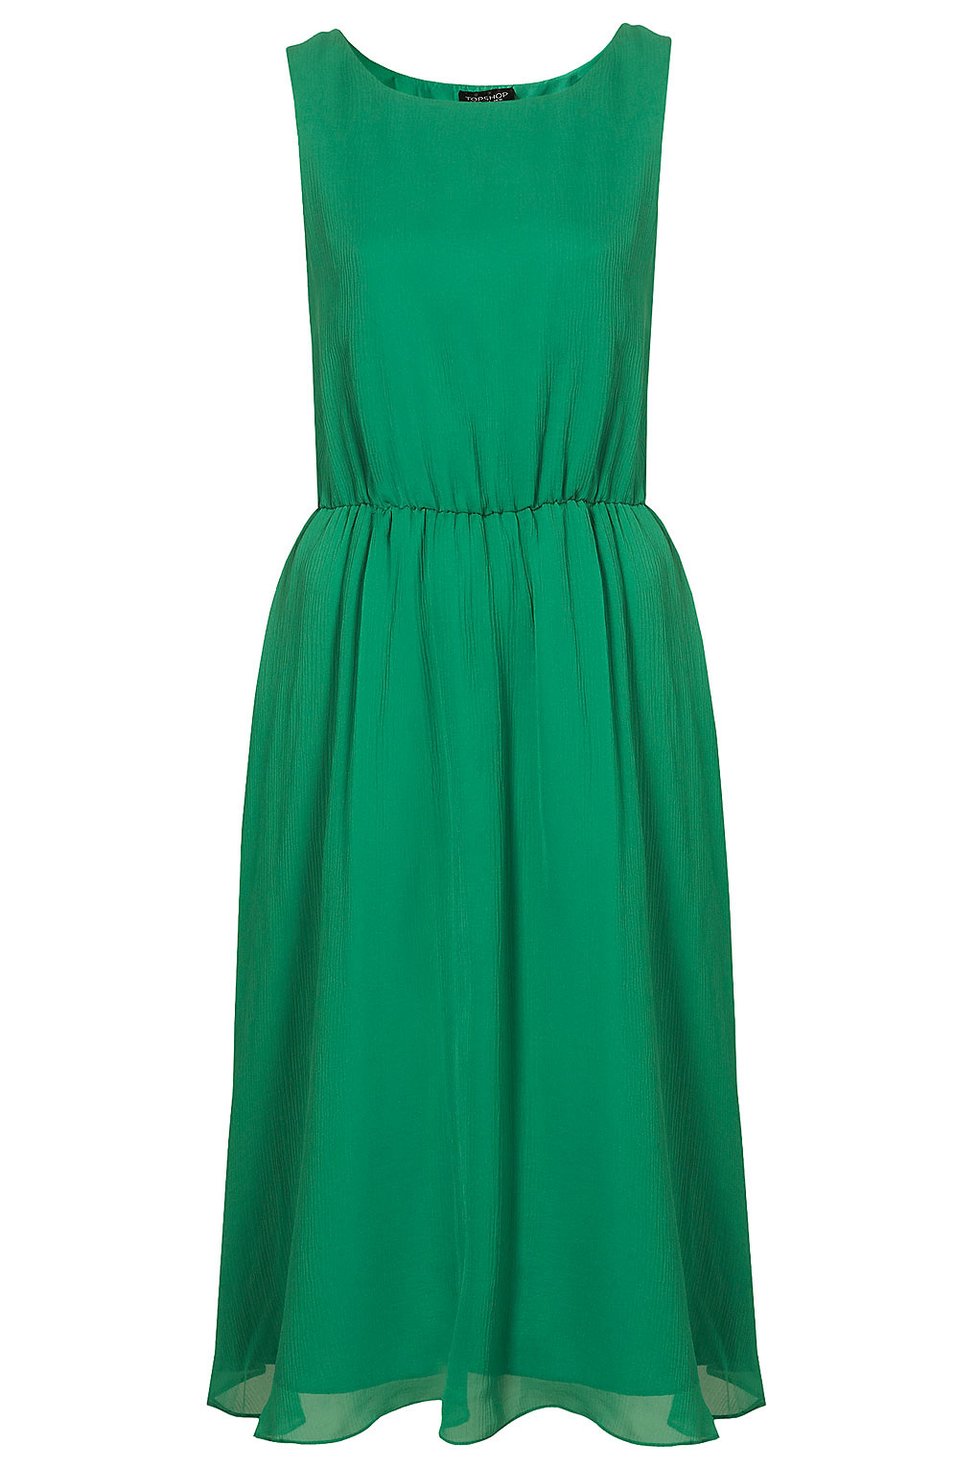 Smaragdové šaty, 1995,- Kč, Topshop